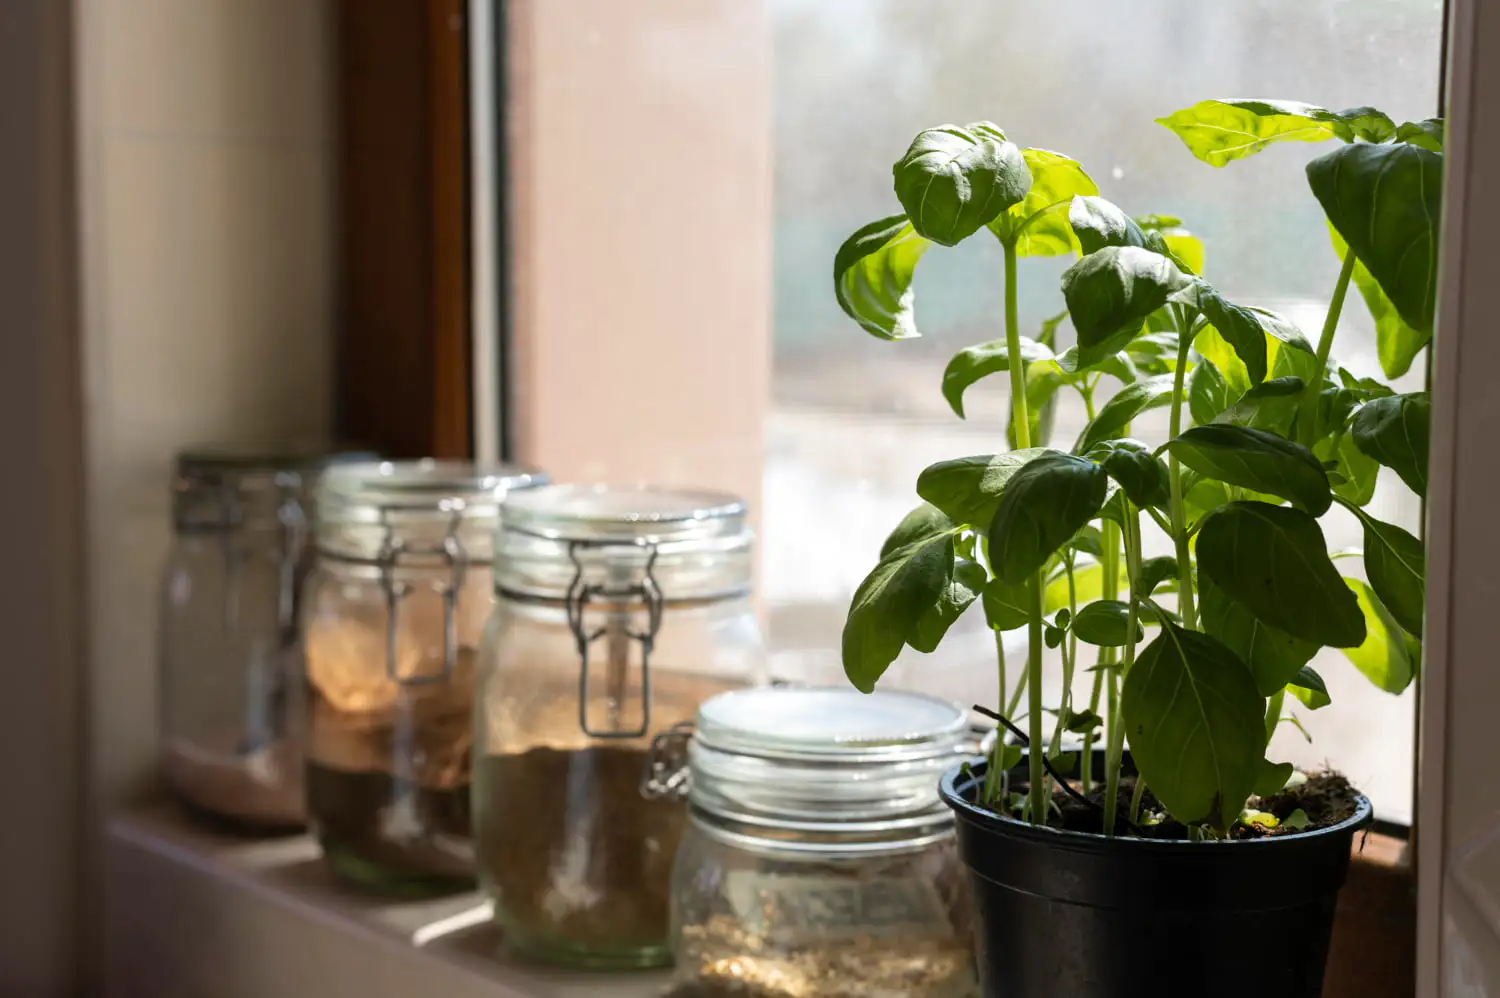 Planta de albahaca iluminada por el sol que prospera en interiores y demuestra estrategias efectivas de iluminación para plantas de interior